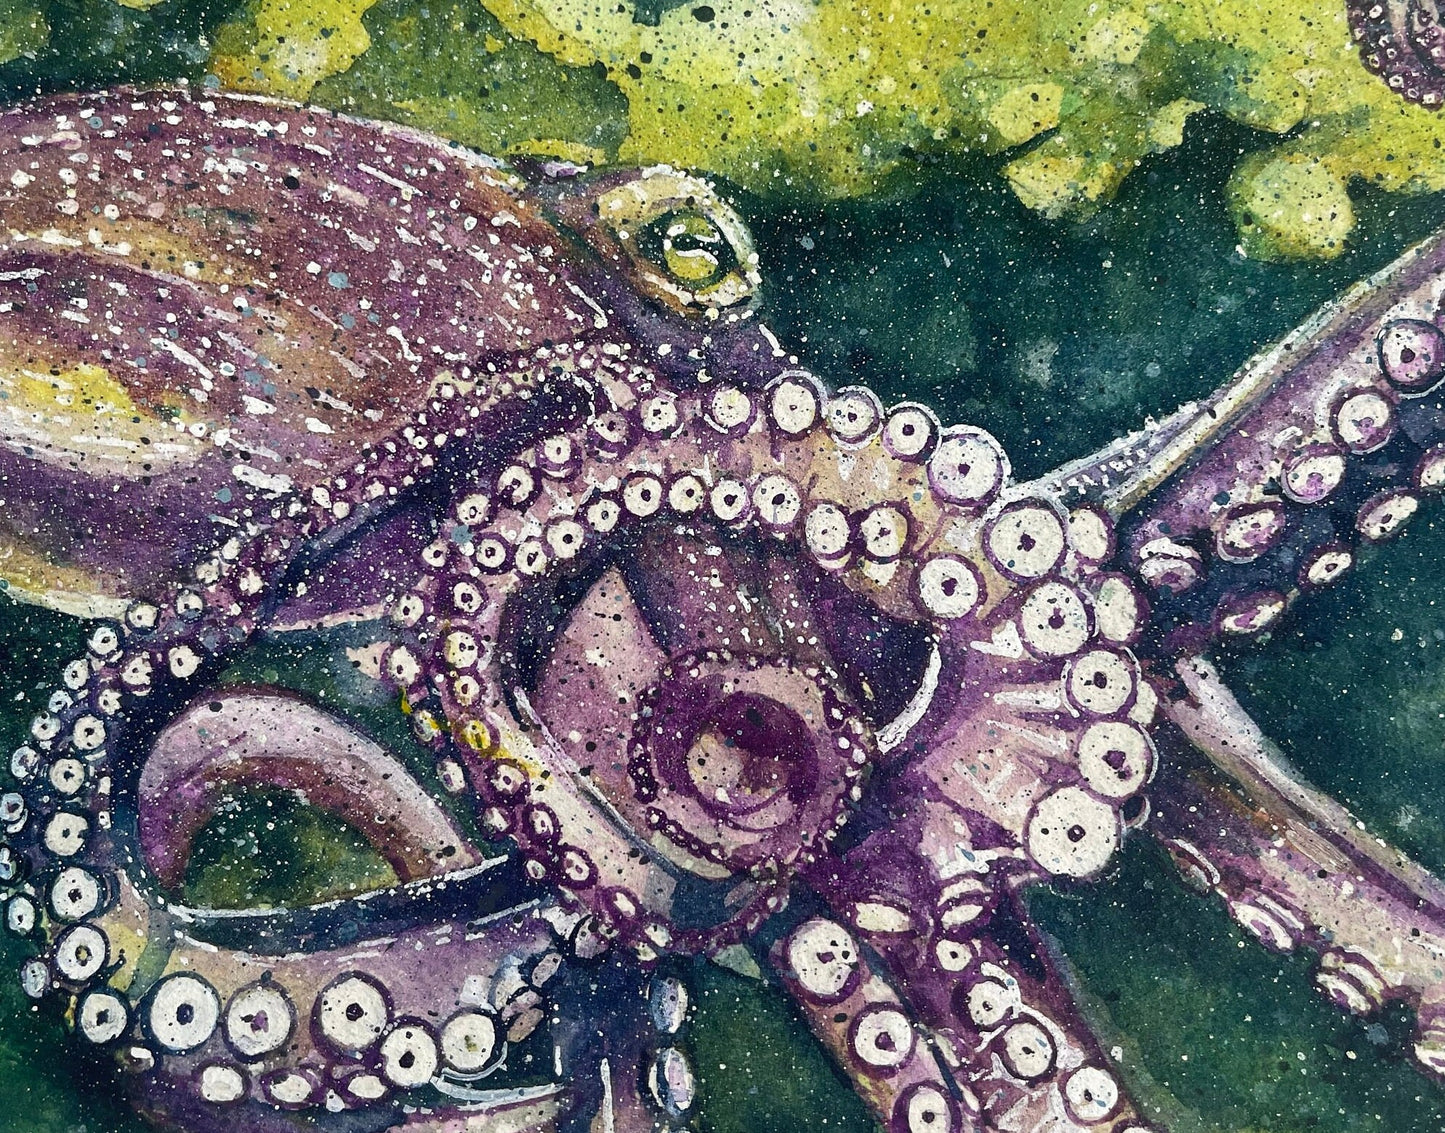 Octopus Teach